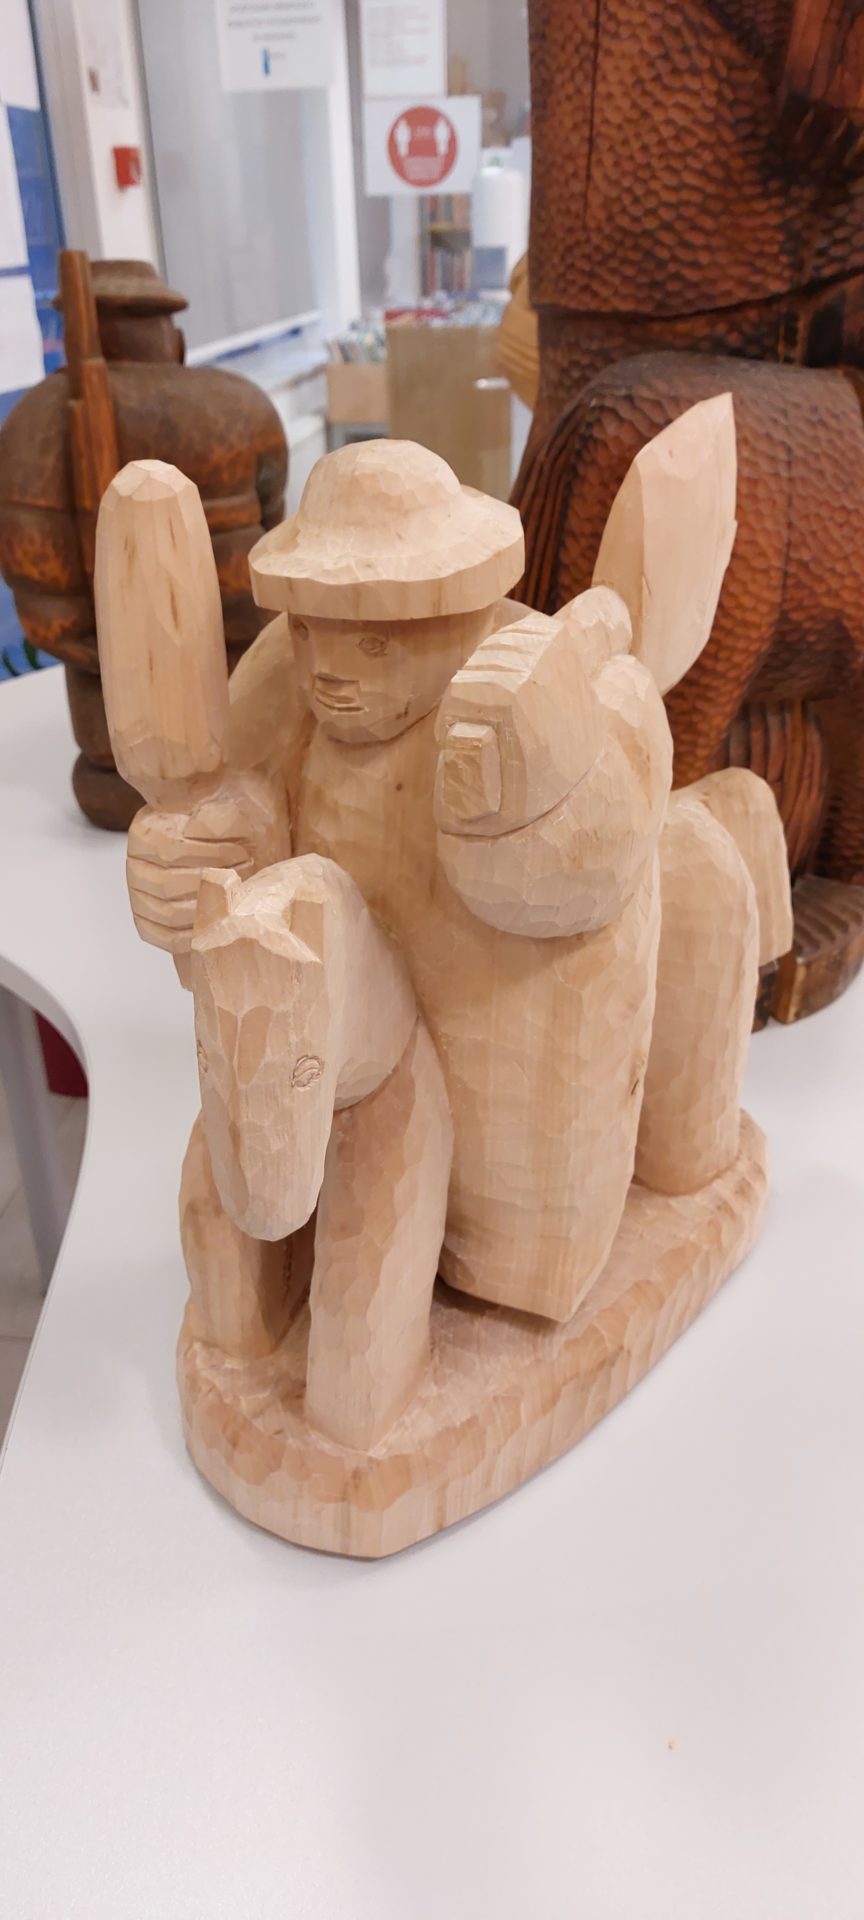 20220916 190221 1 - Edvin Puntar - razstava lesenih kiparskih del